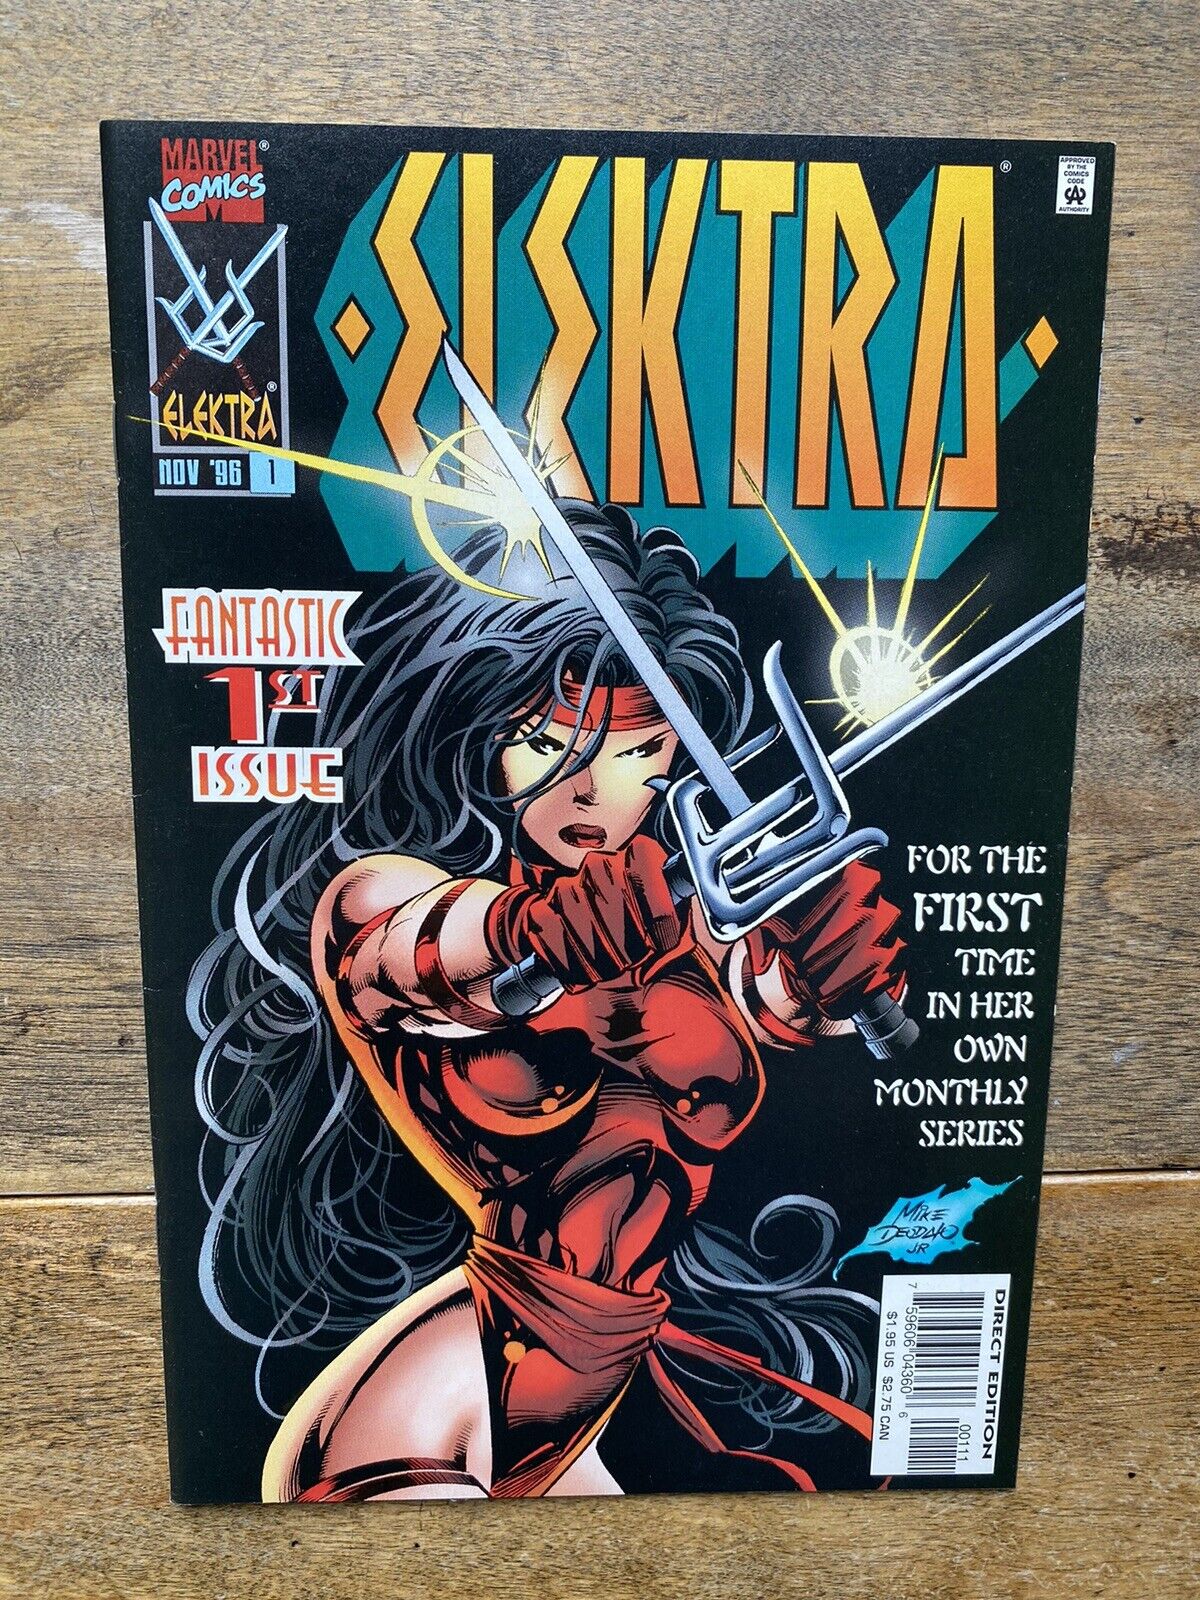 Elektra #1 1996 1st Issue Series, Marvel Comics